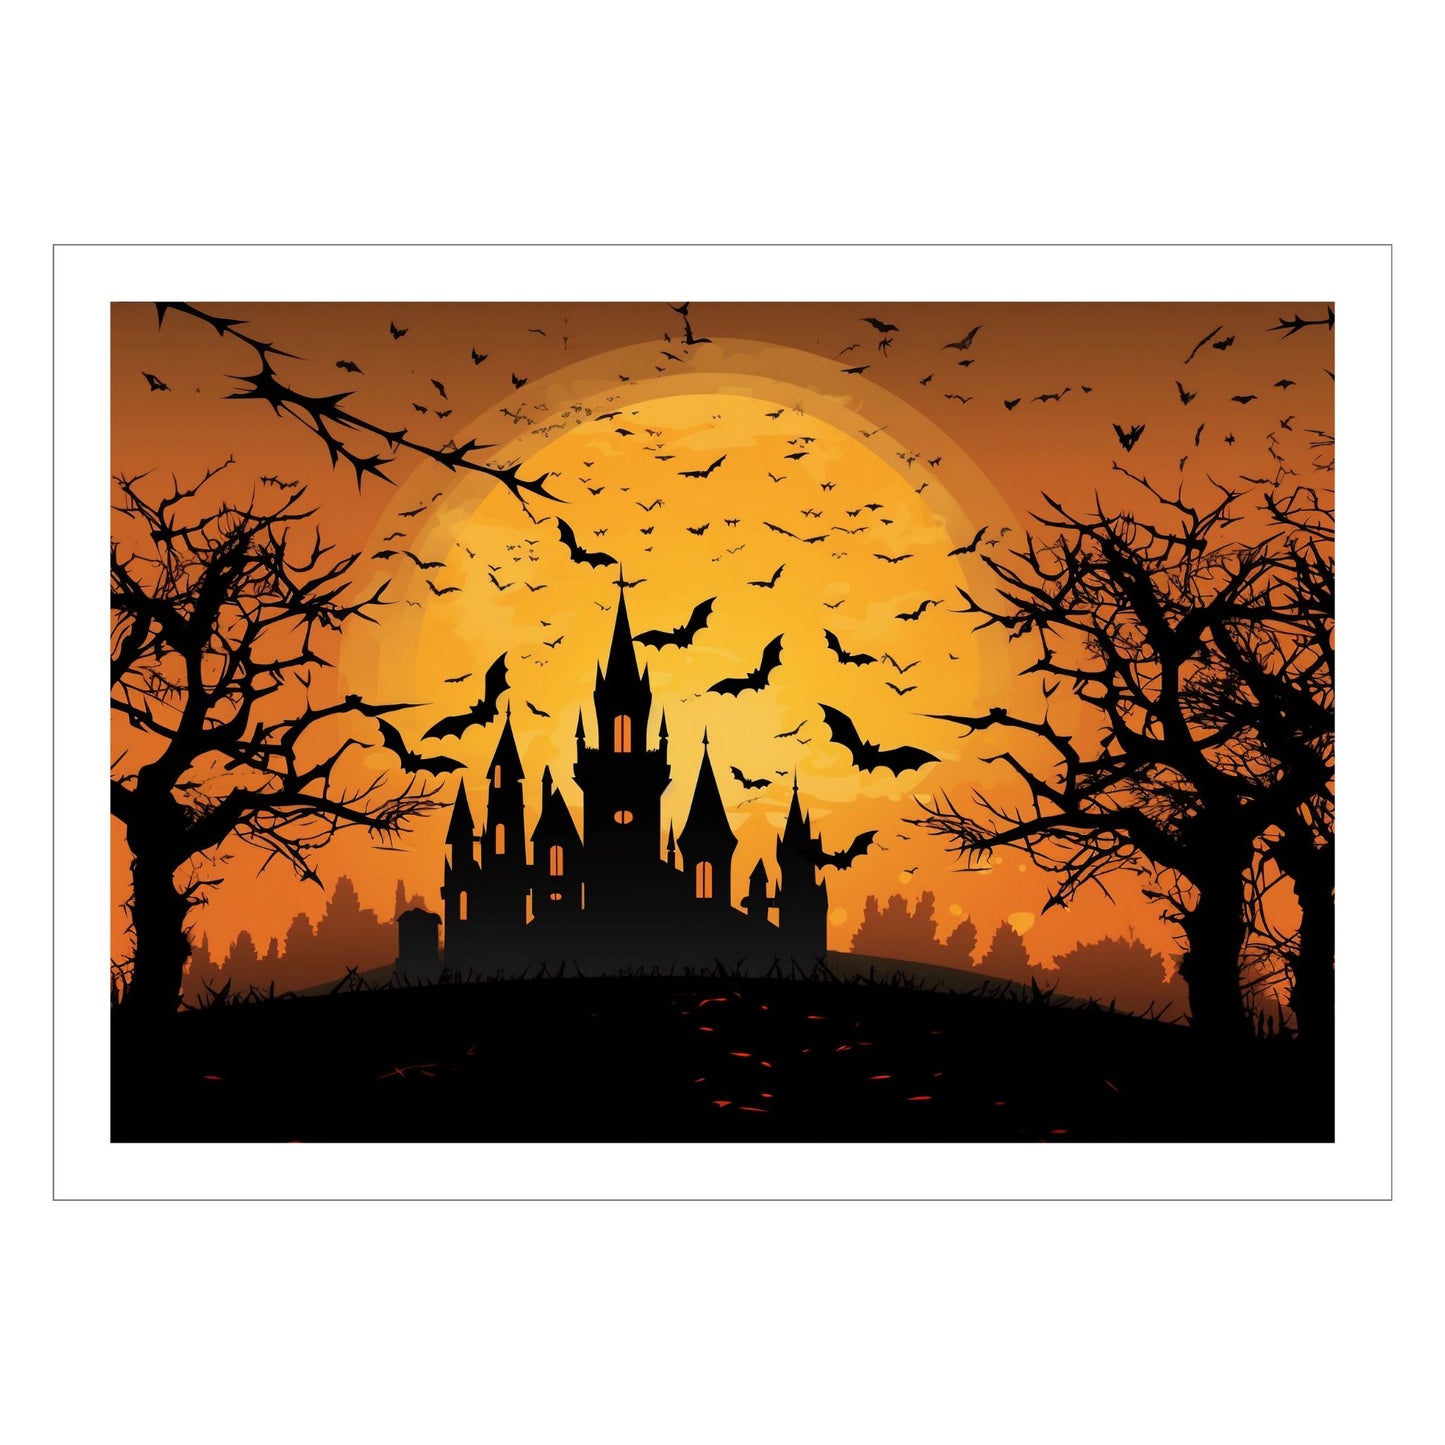 Creepy plakat med motiv av Halloween slott ved fullmåne. Motivet viser nattmørke med flaggermus og lys i vinduene.